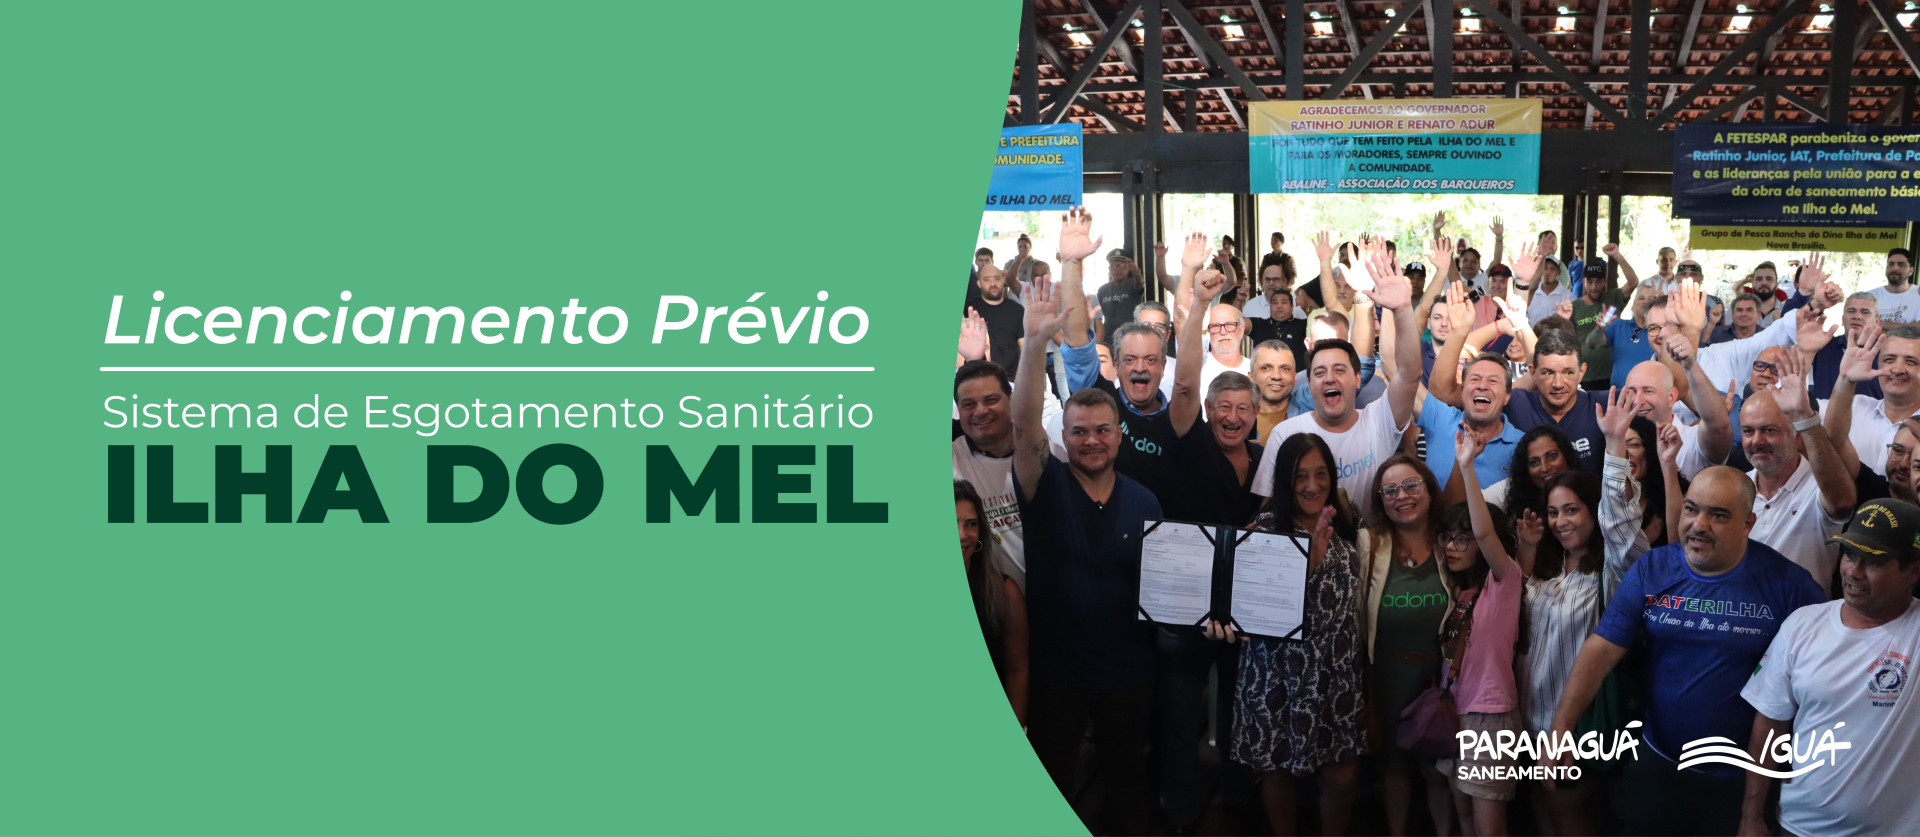 Paranaguá Saneamento recebe Licença Ambiental Prévia para o sistema de coleta e tratamento de esgoto na Ilha do Mel